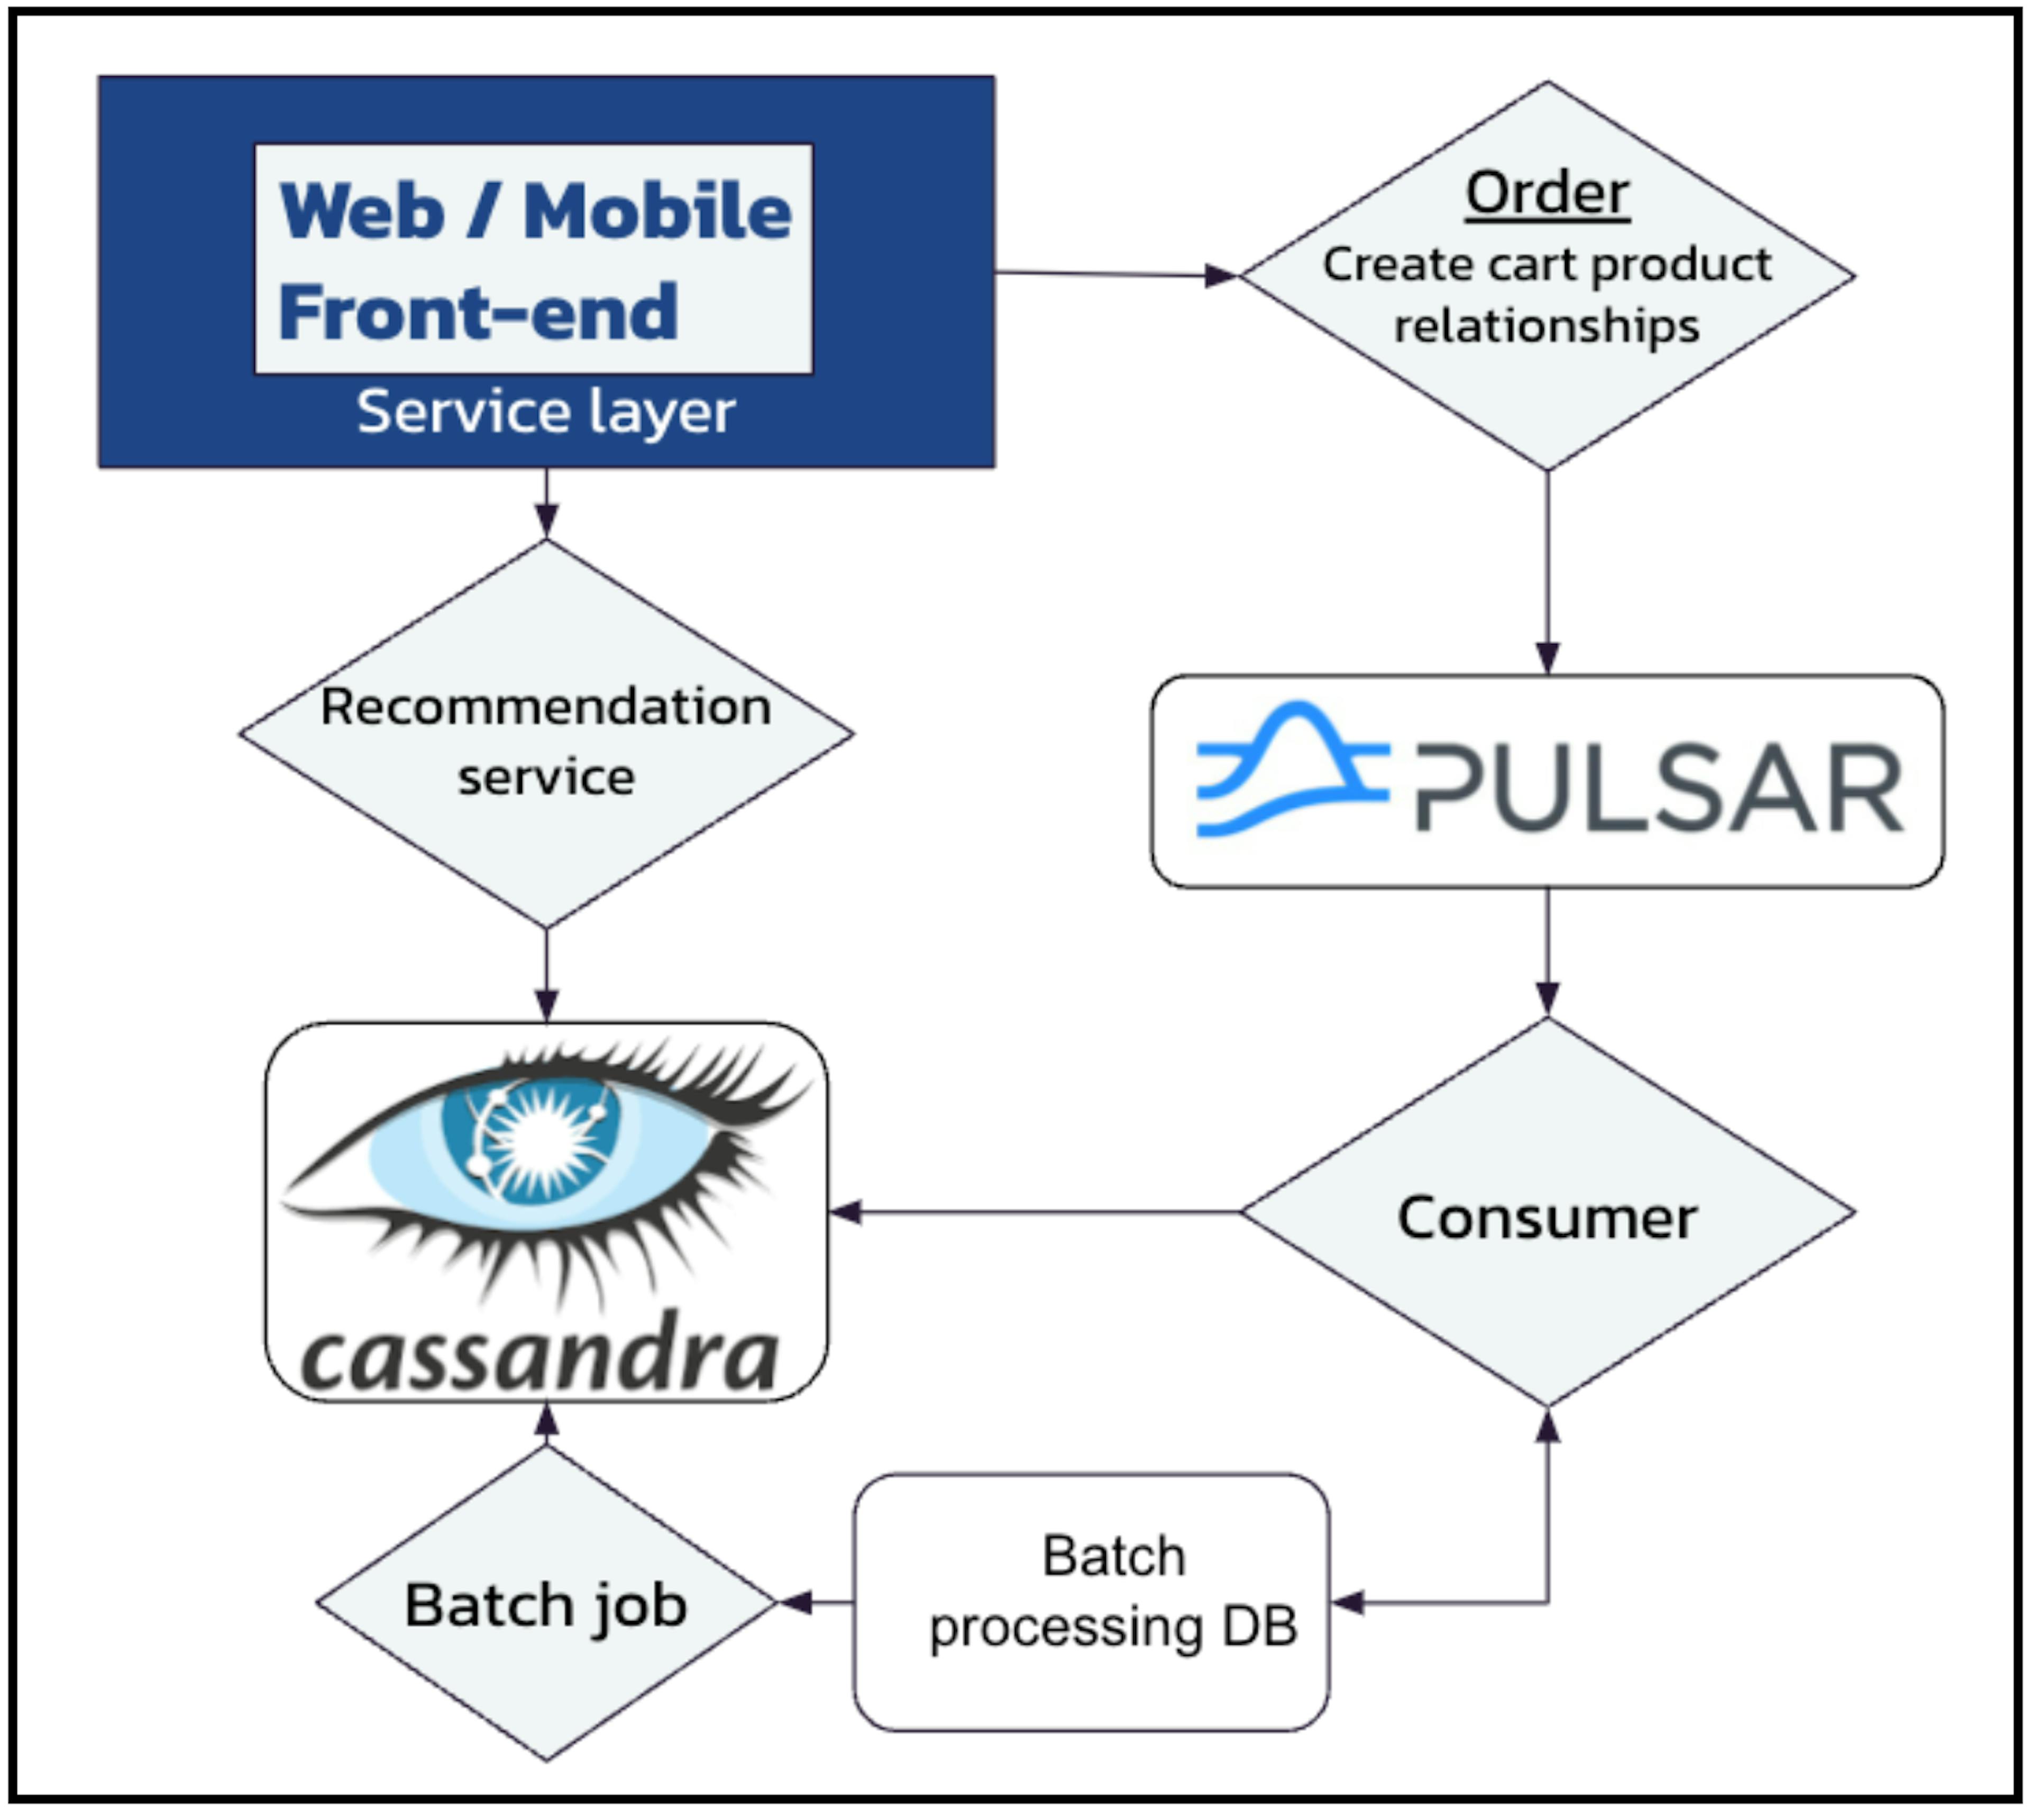 图 2 - 使用 Apache Pulsar 和 Apache Cassandra 增强现有的批量推荐系统。